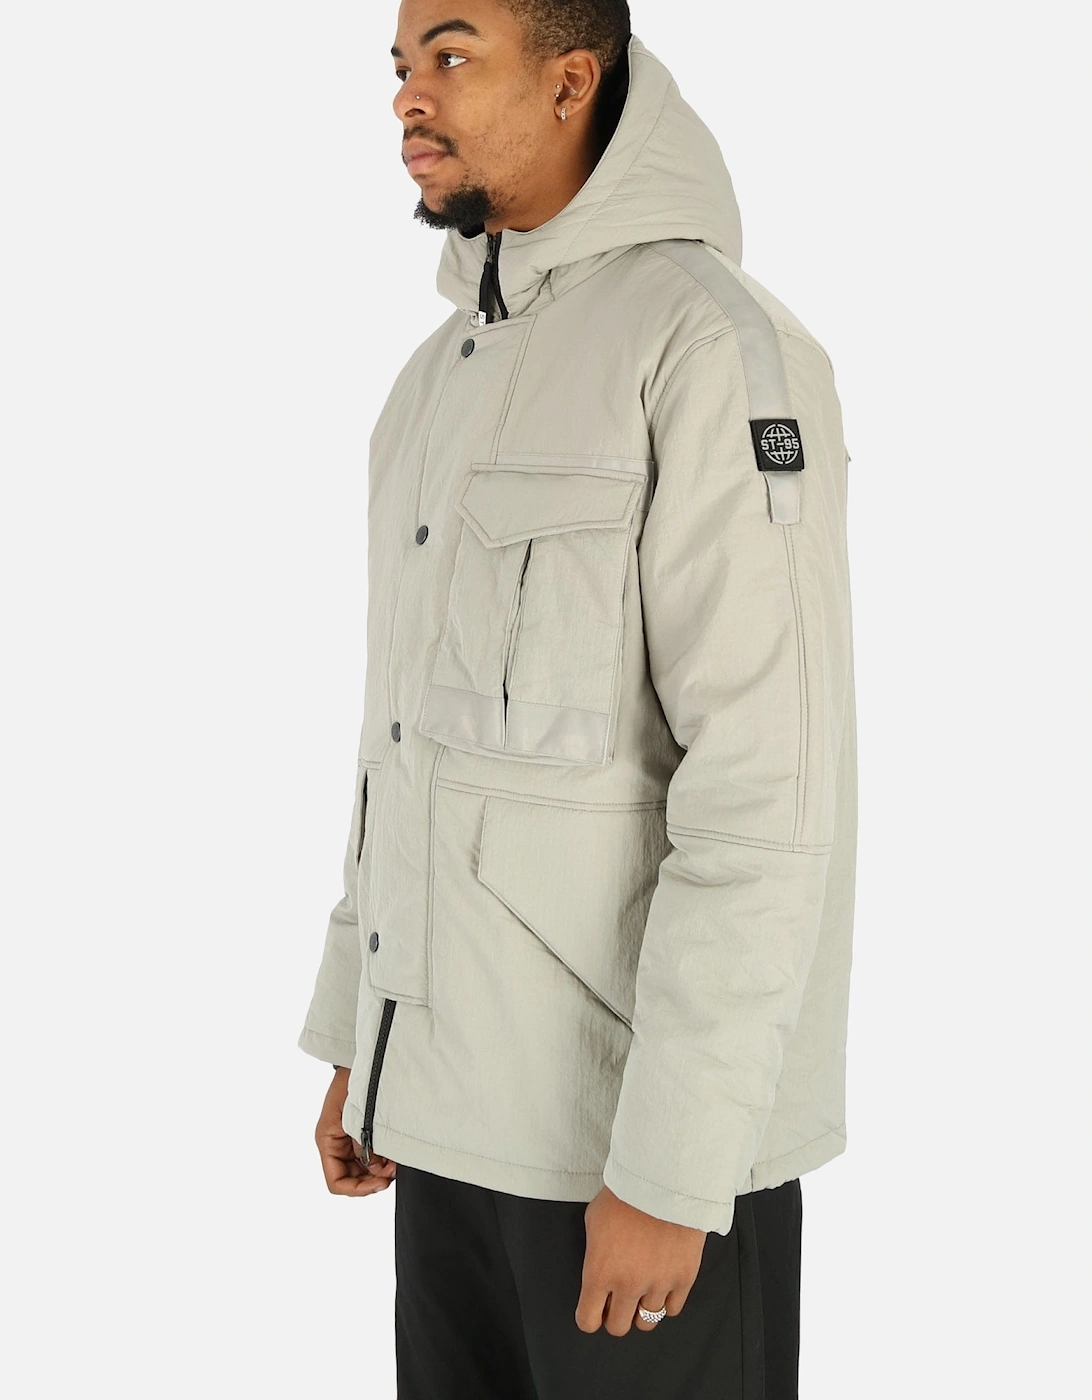 Proximity Grey Hooded Parka Jacket